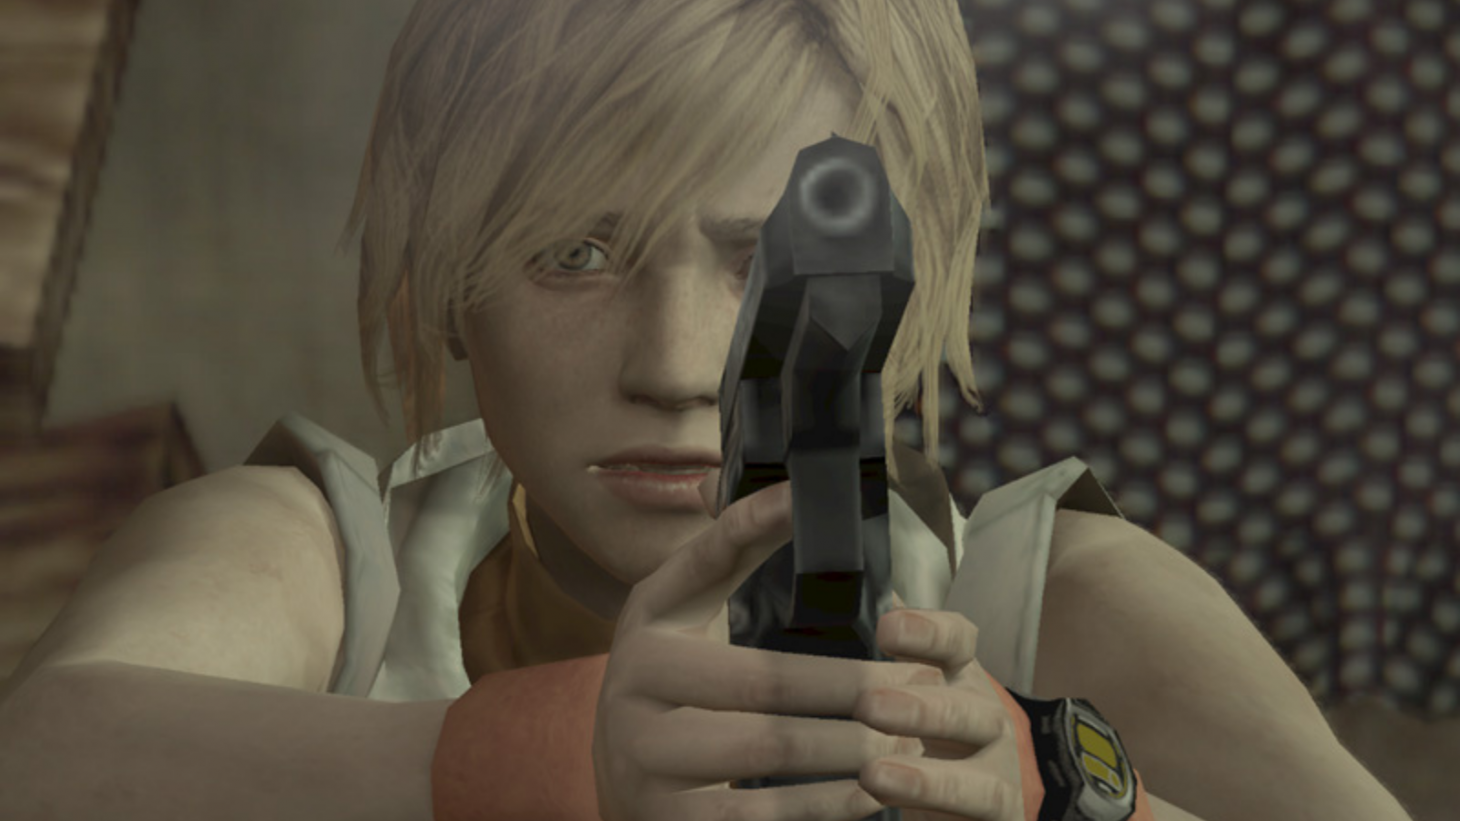 That Silent Hill reboot rumor has been debunked by Konami